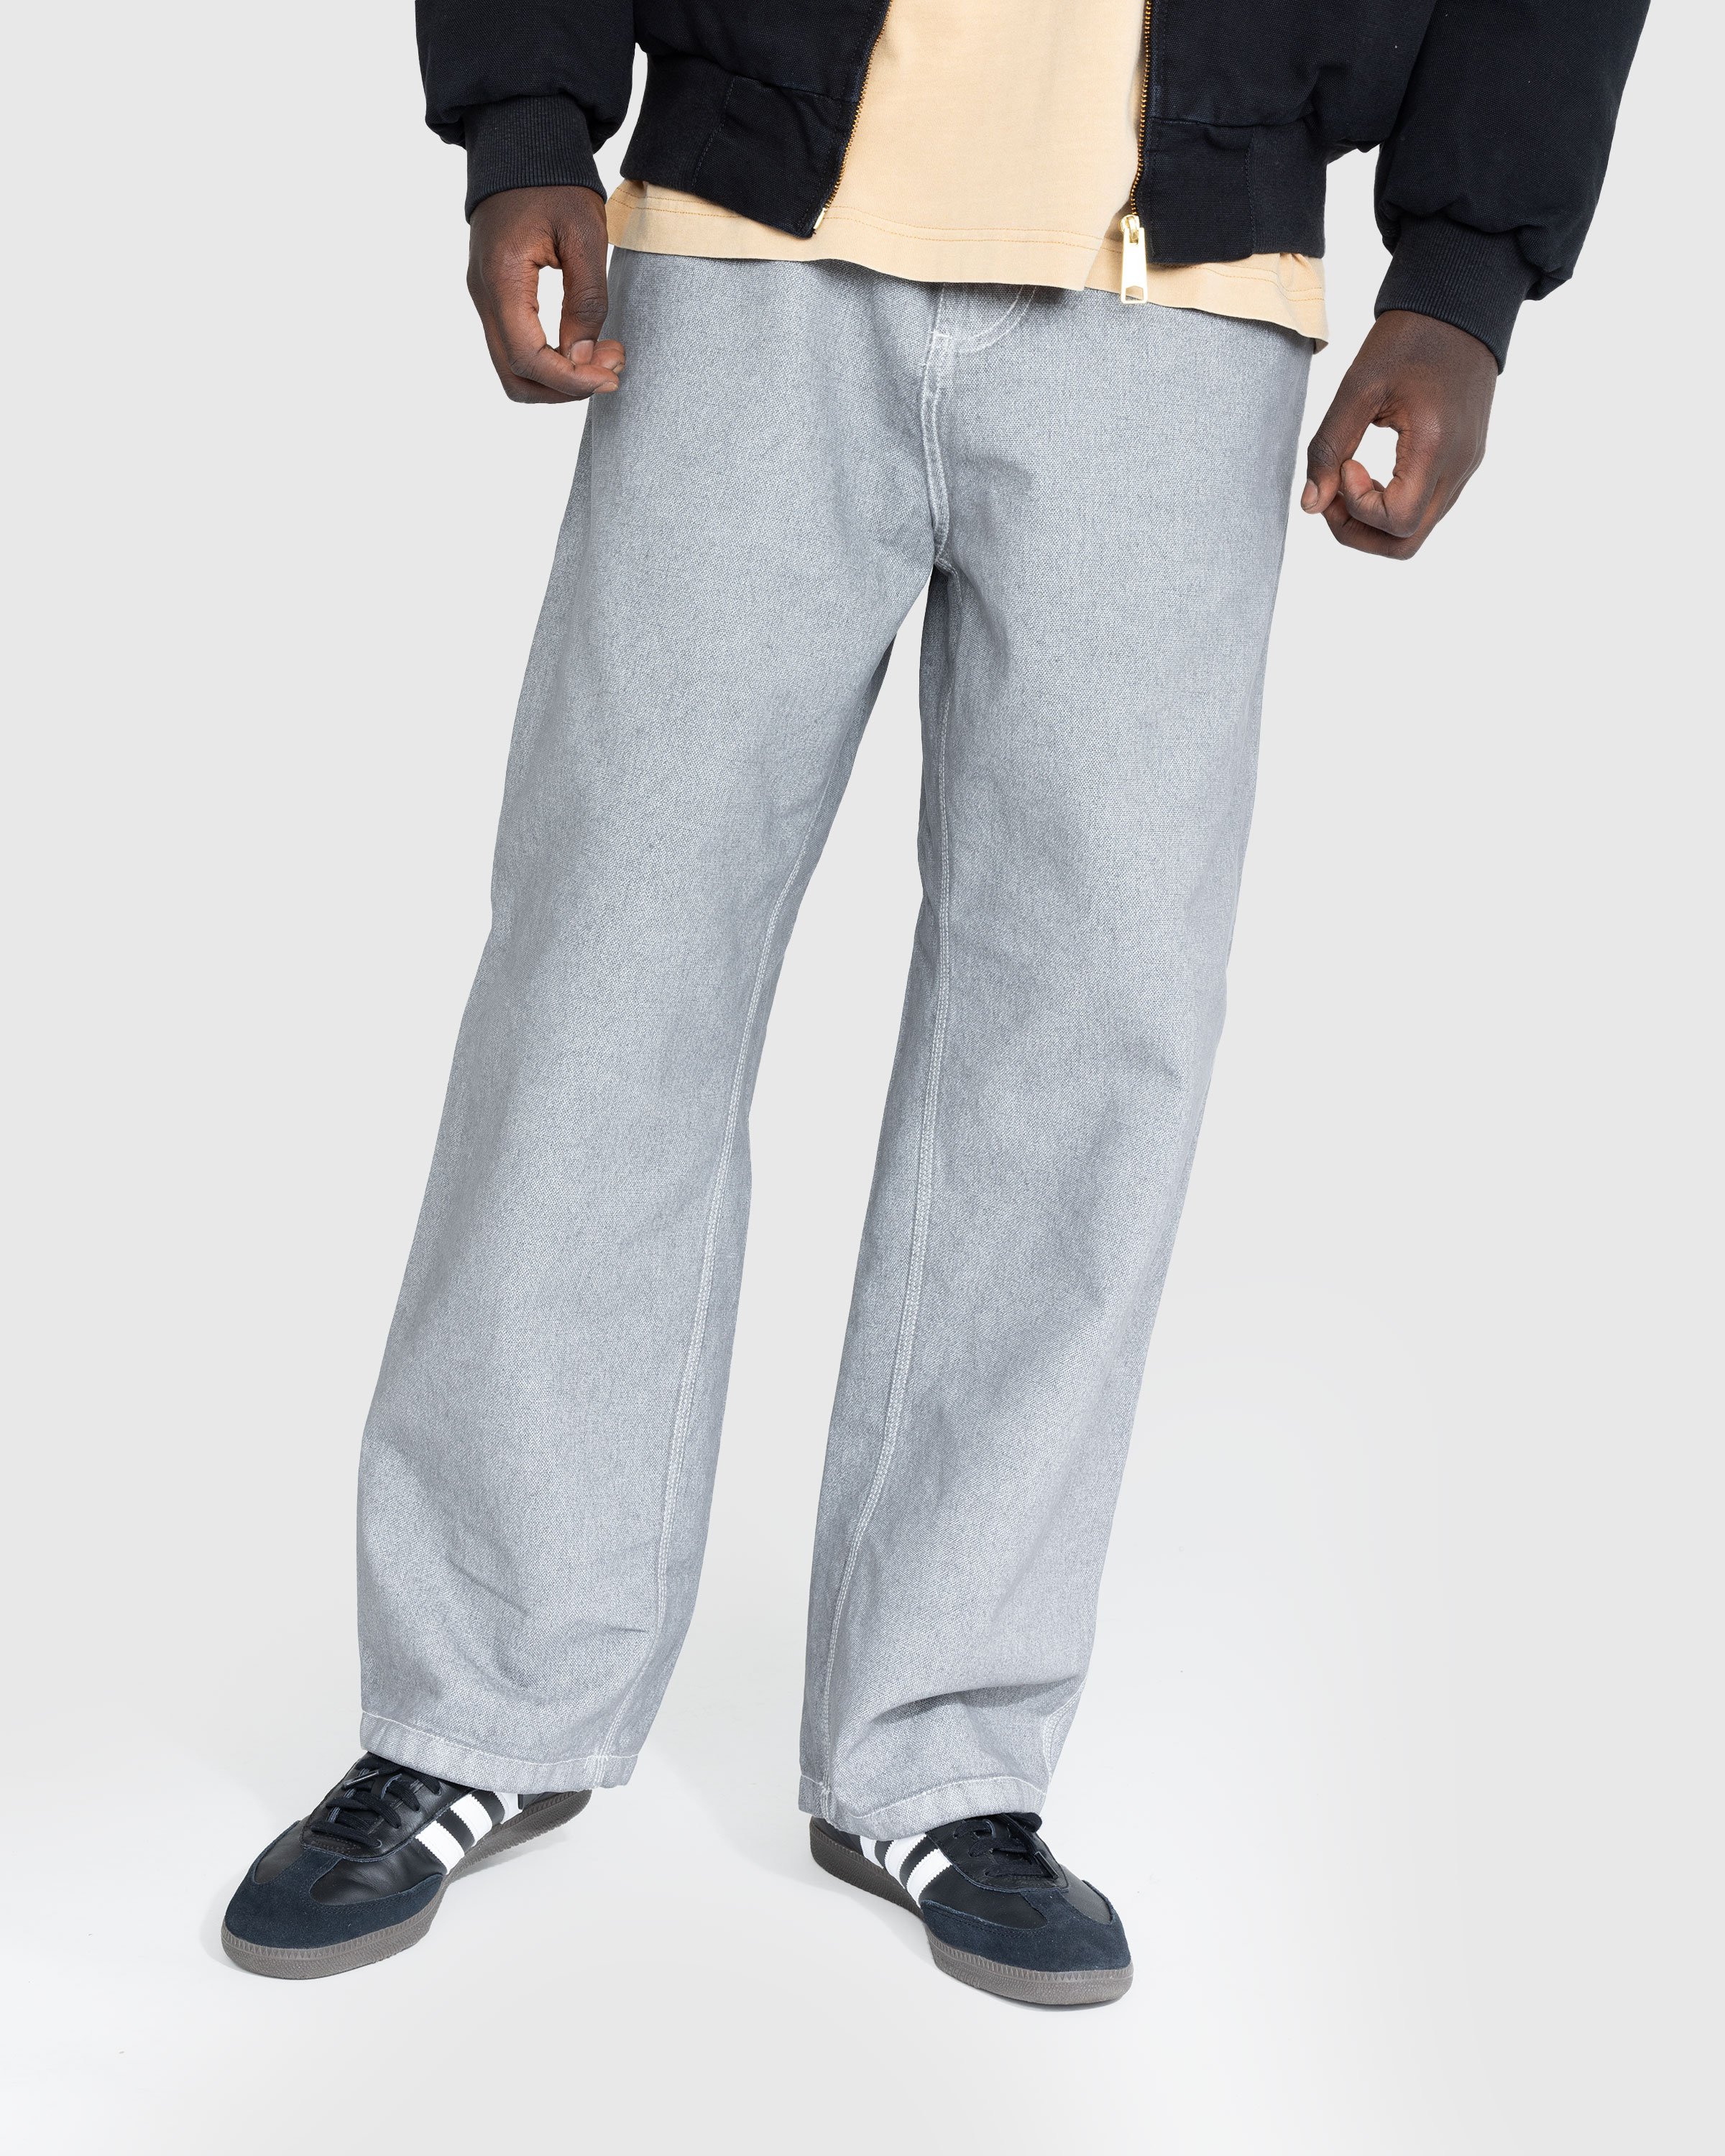 Carhartt WIP - OG Single Knee Pant Wax/Blacksmith/Stone Washed - Clothing - Grey - Image 2